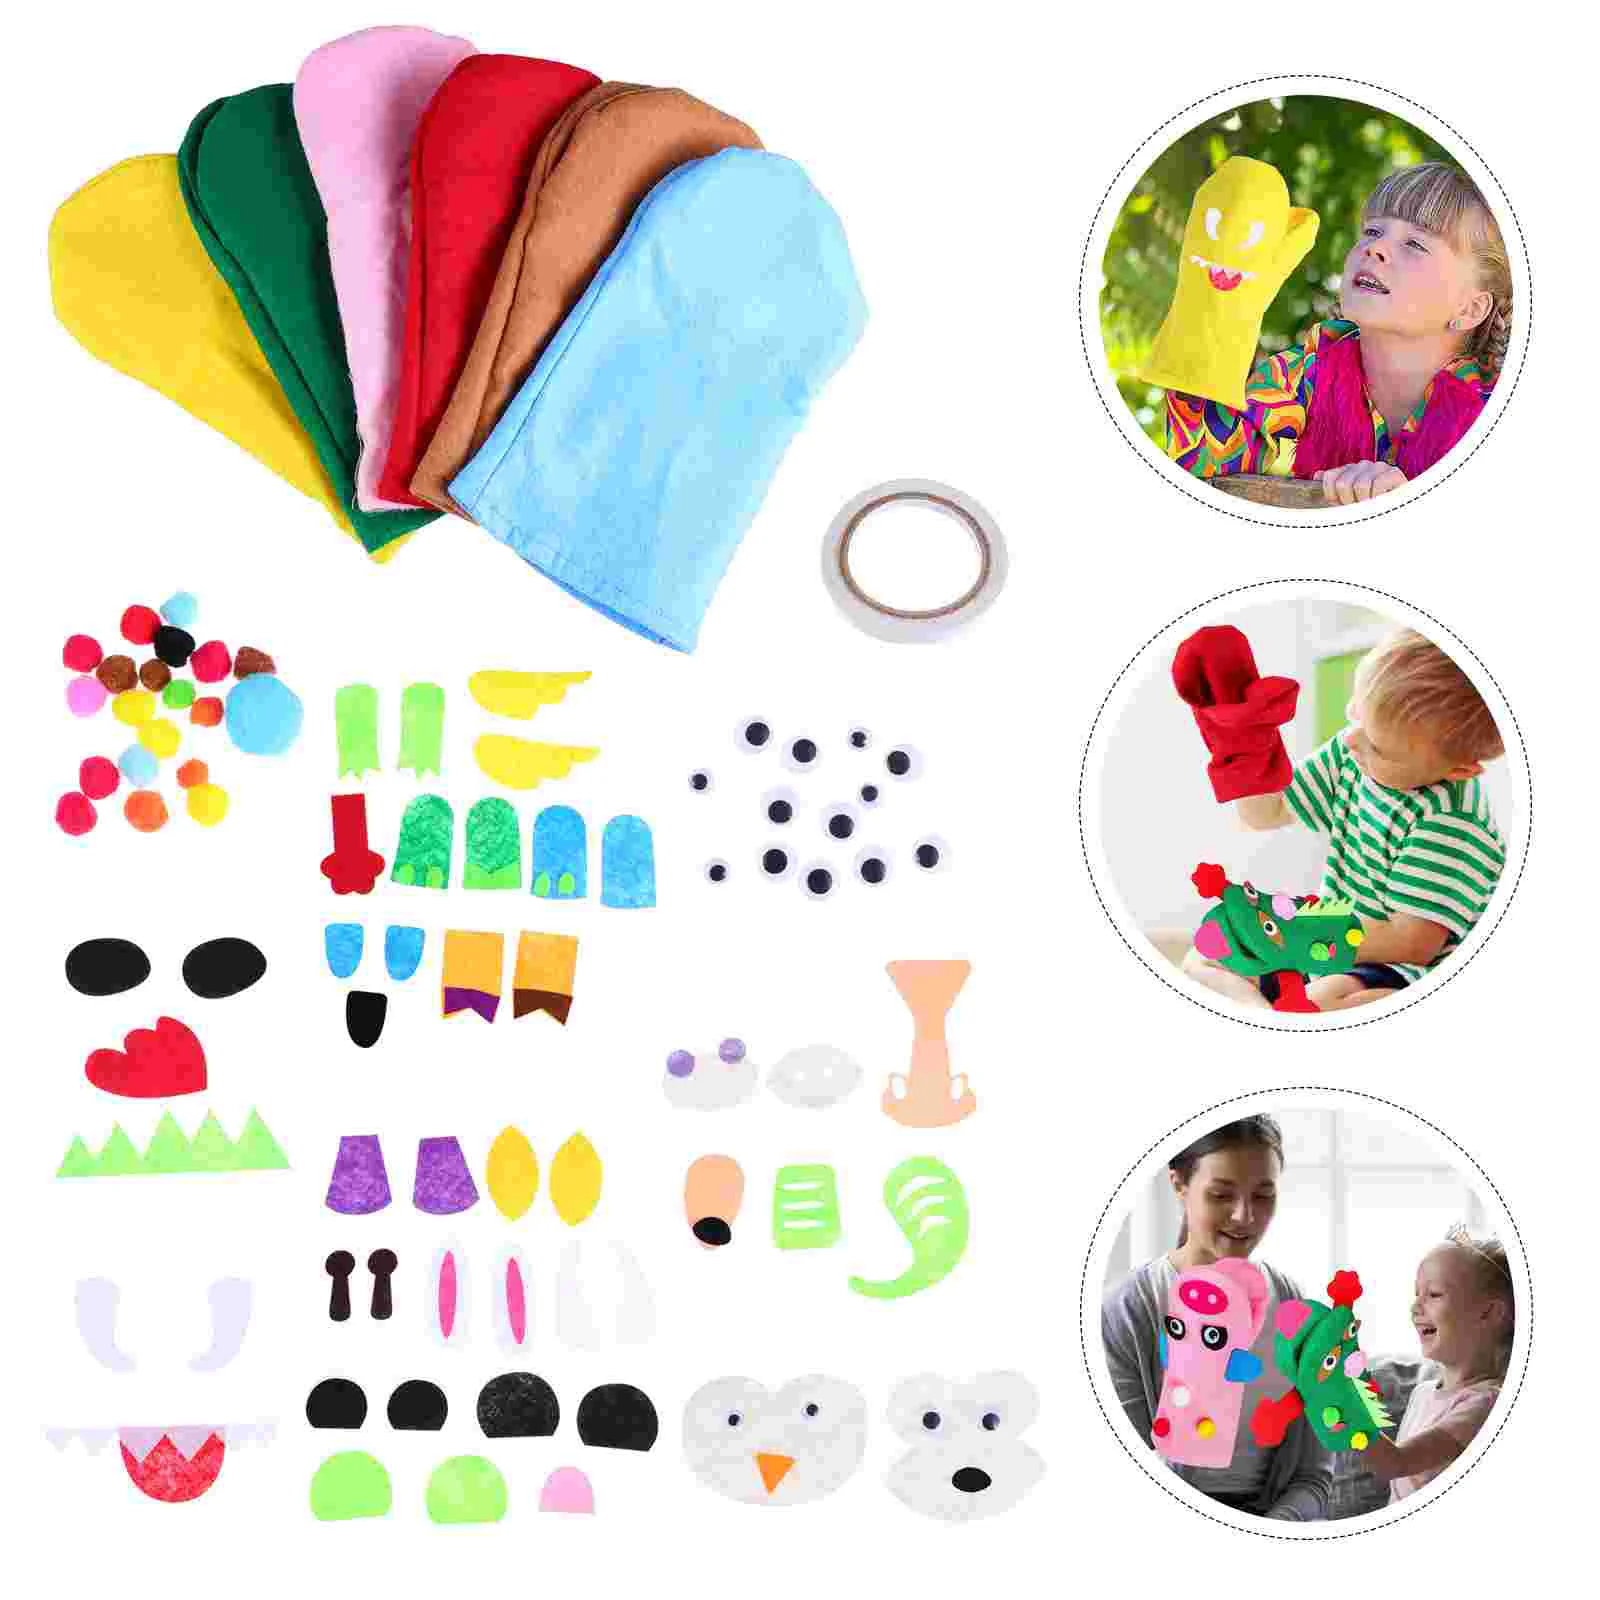 

Hand Puppet Kit Handmade Puppets Materials DIY Felt Crafts Kids Accessories Supplies